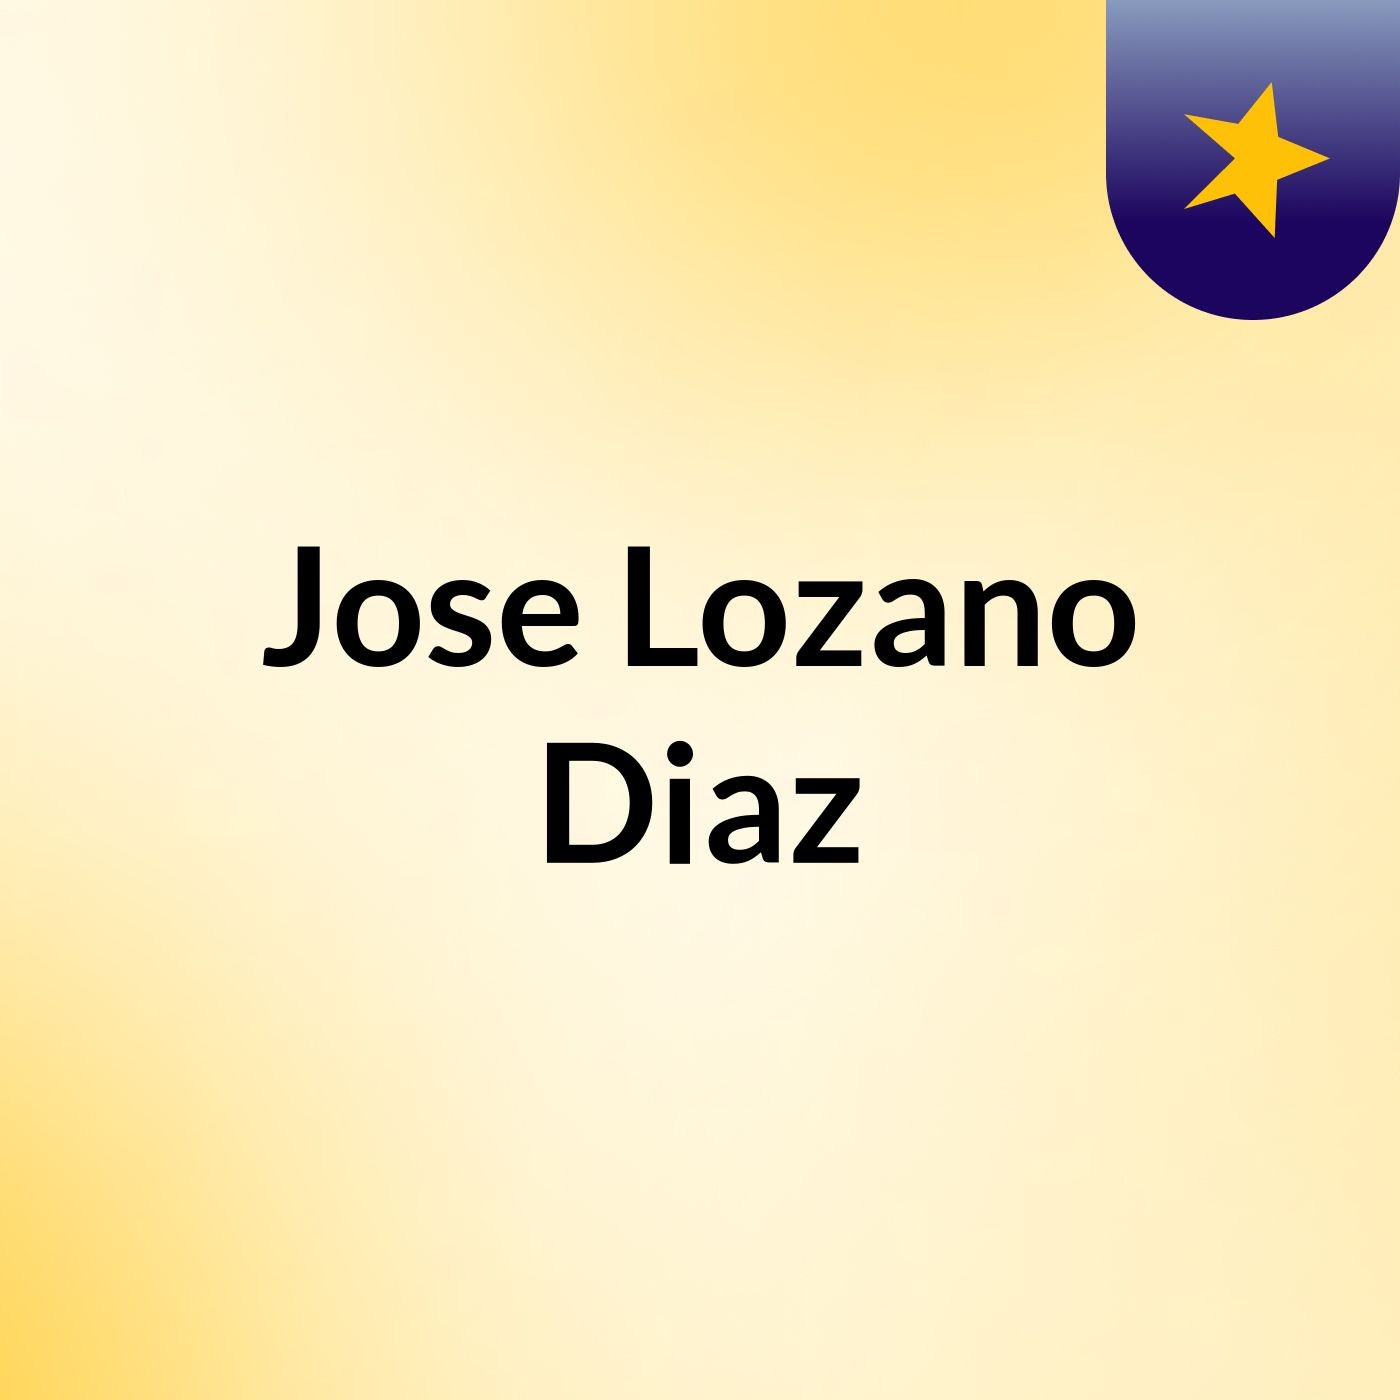 Jose Lozano Diaz